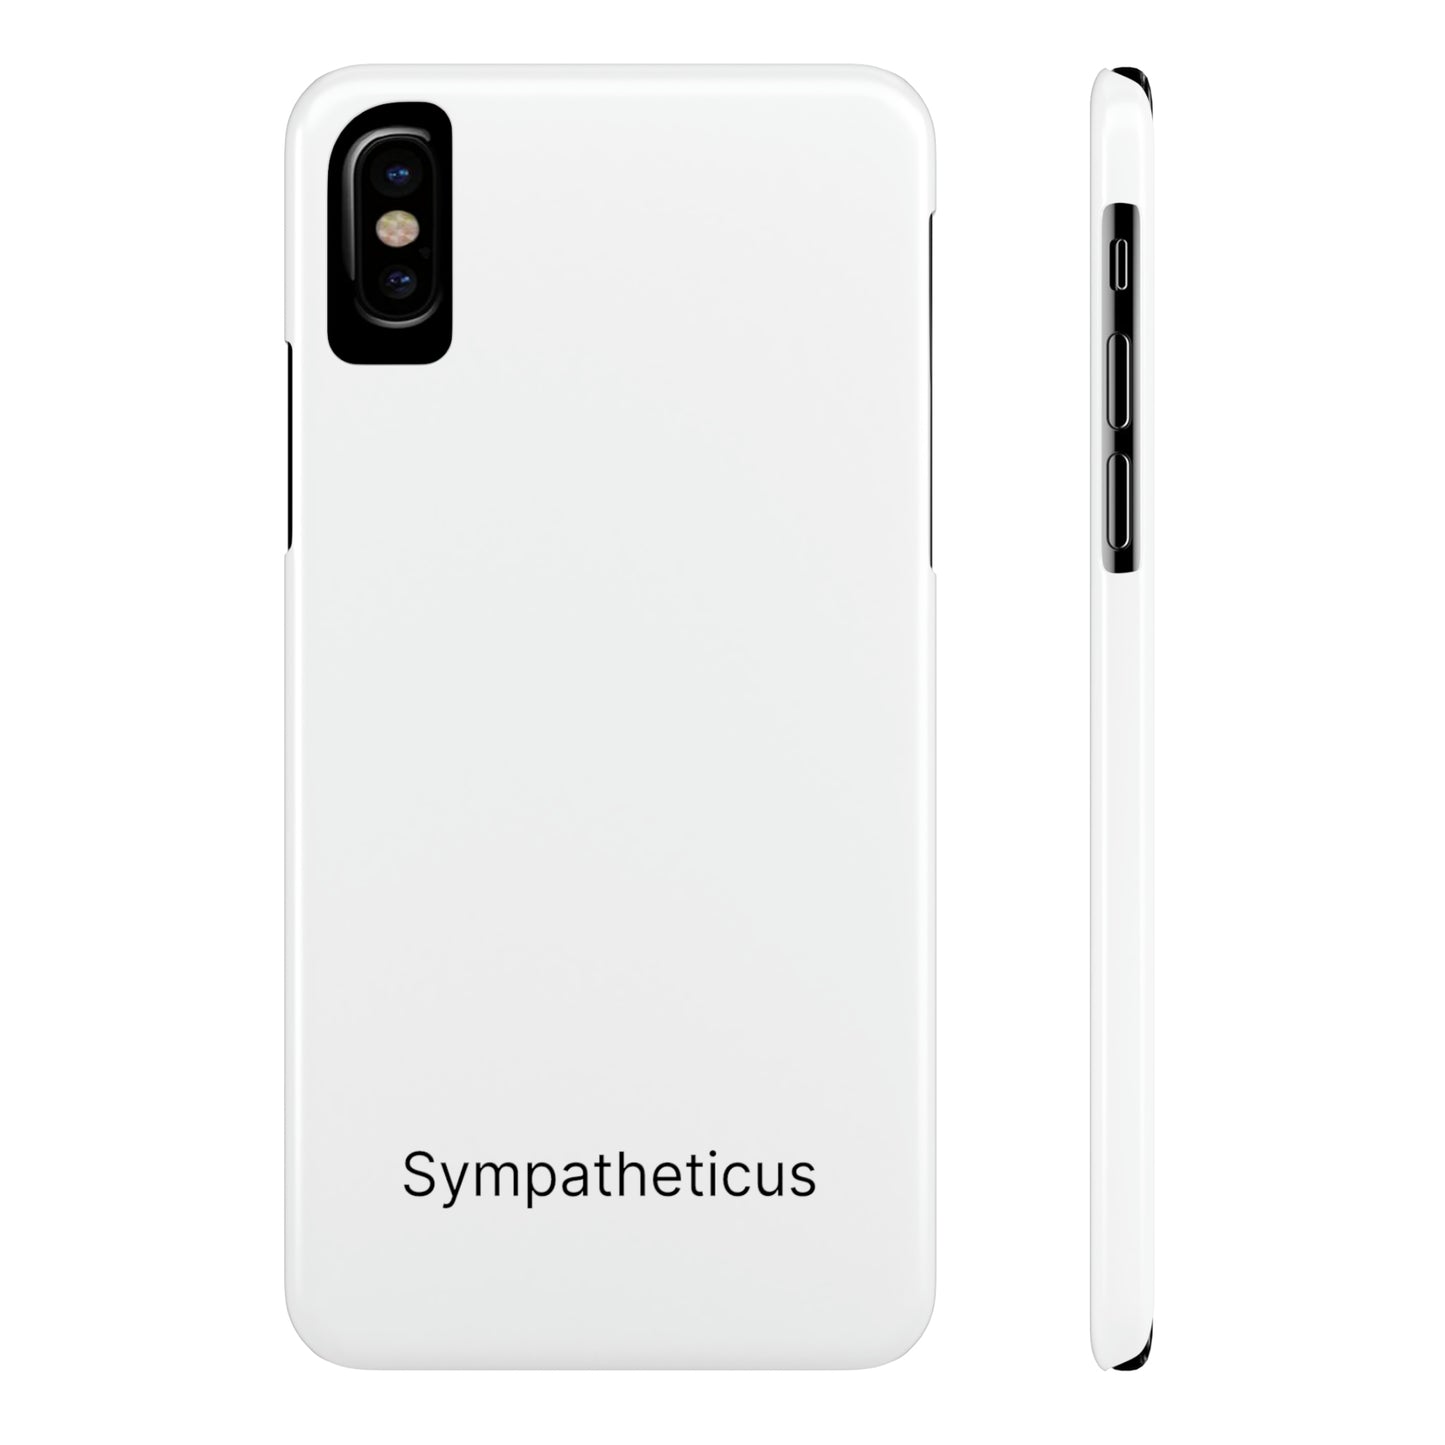 Sympatheticus essential slim iphone case v1-01